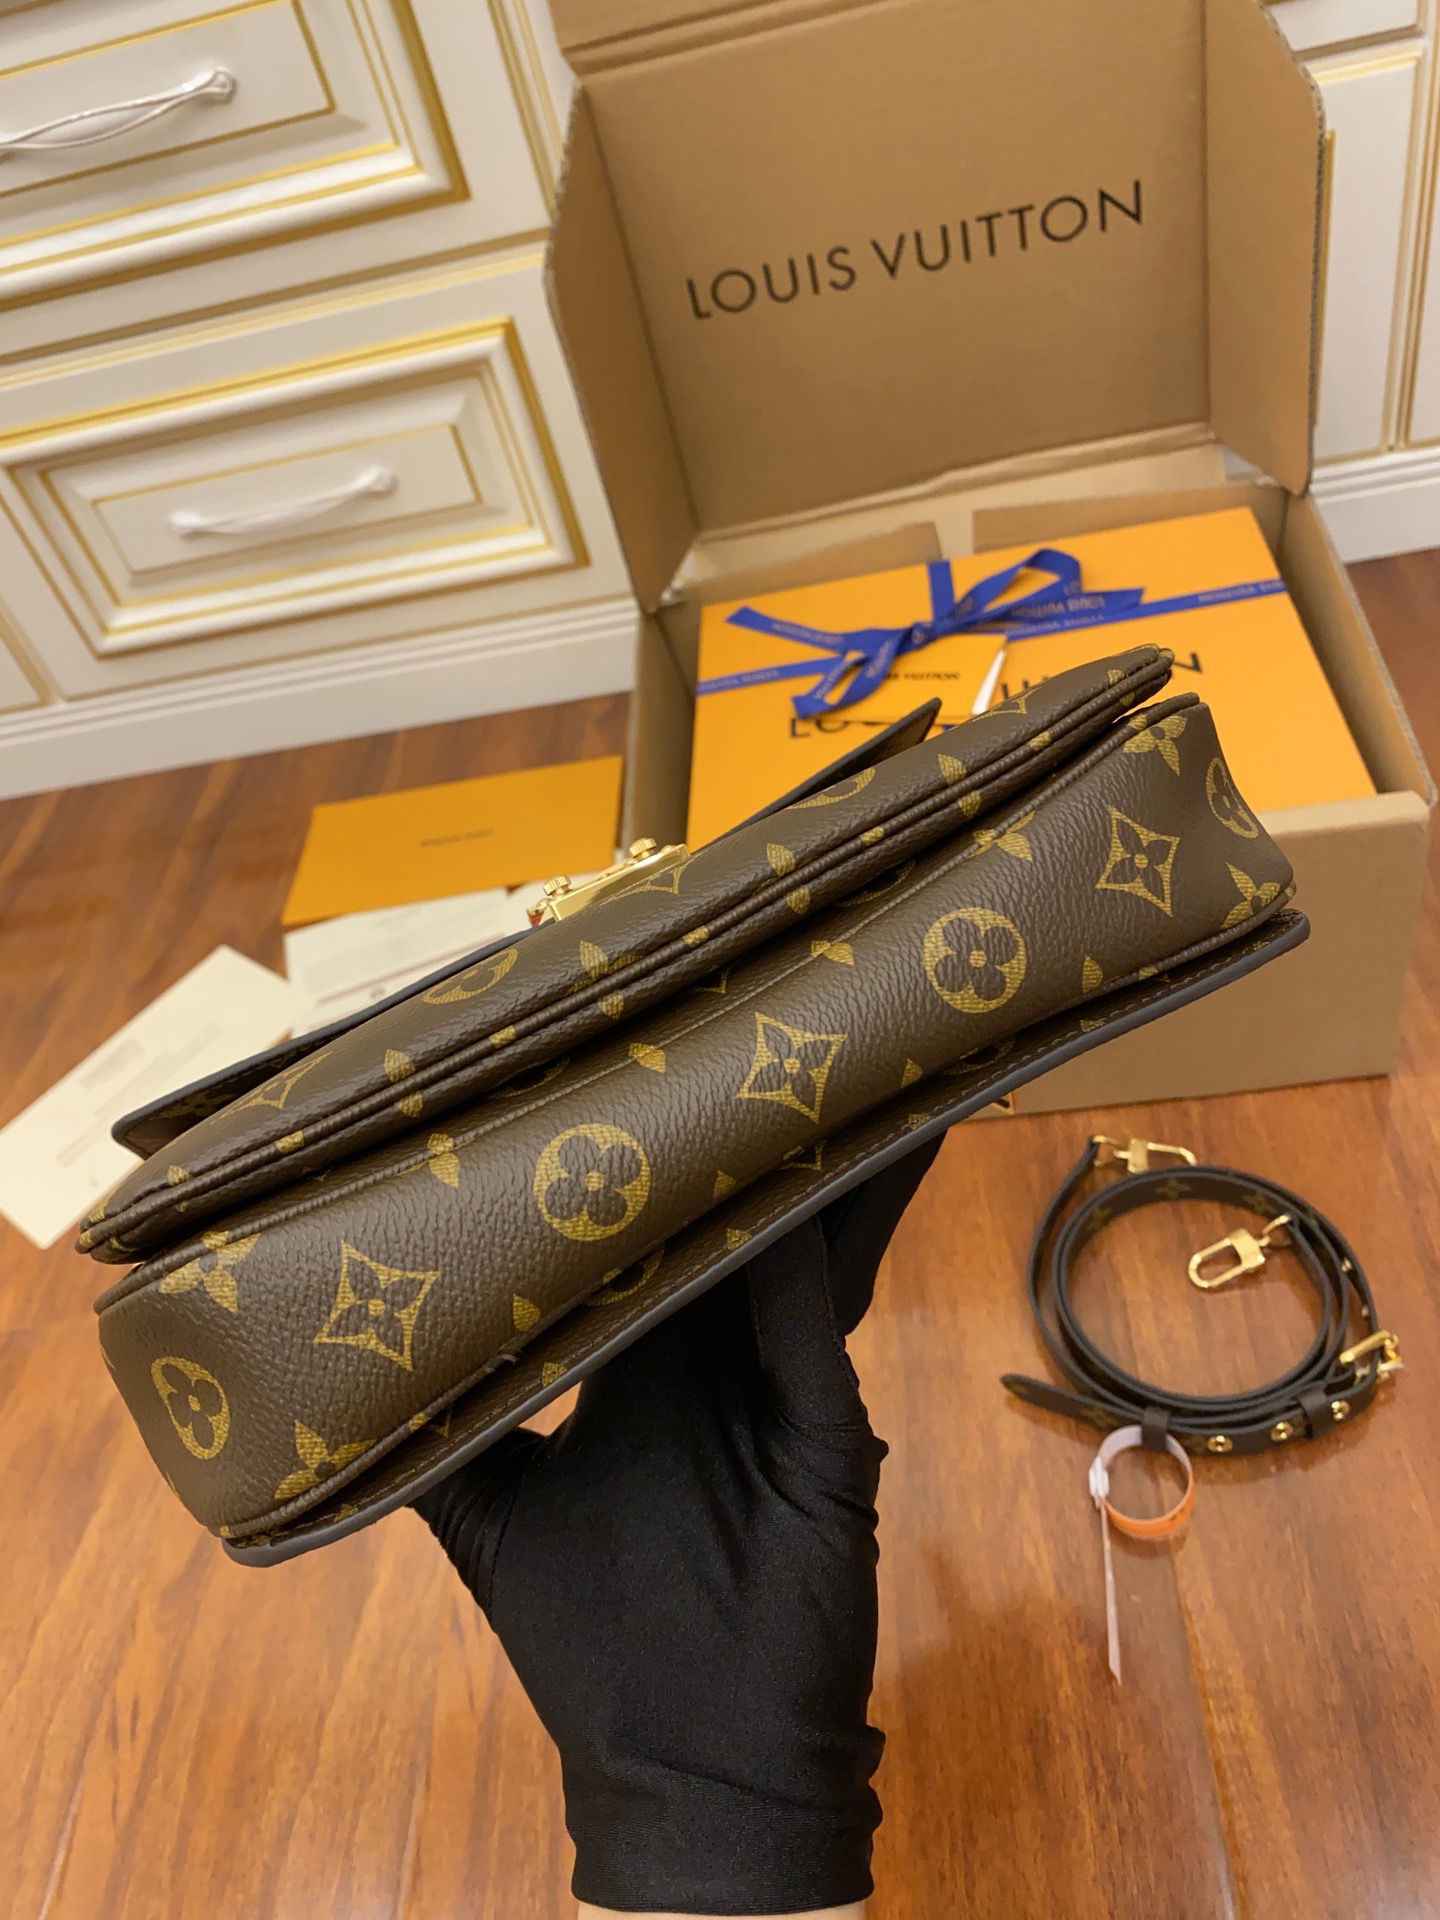 Louis Vuitton LV Pochette Métis邮差包 M44875 M44876